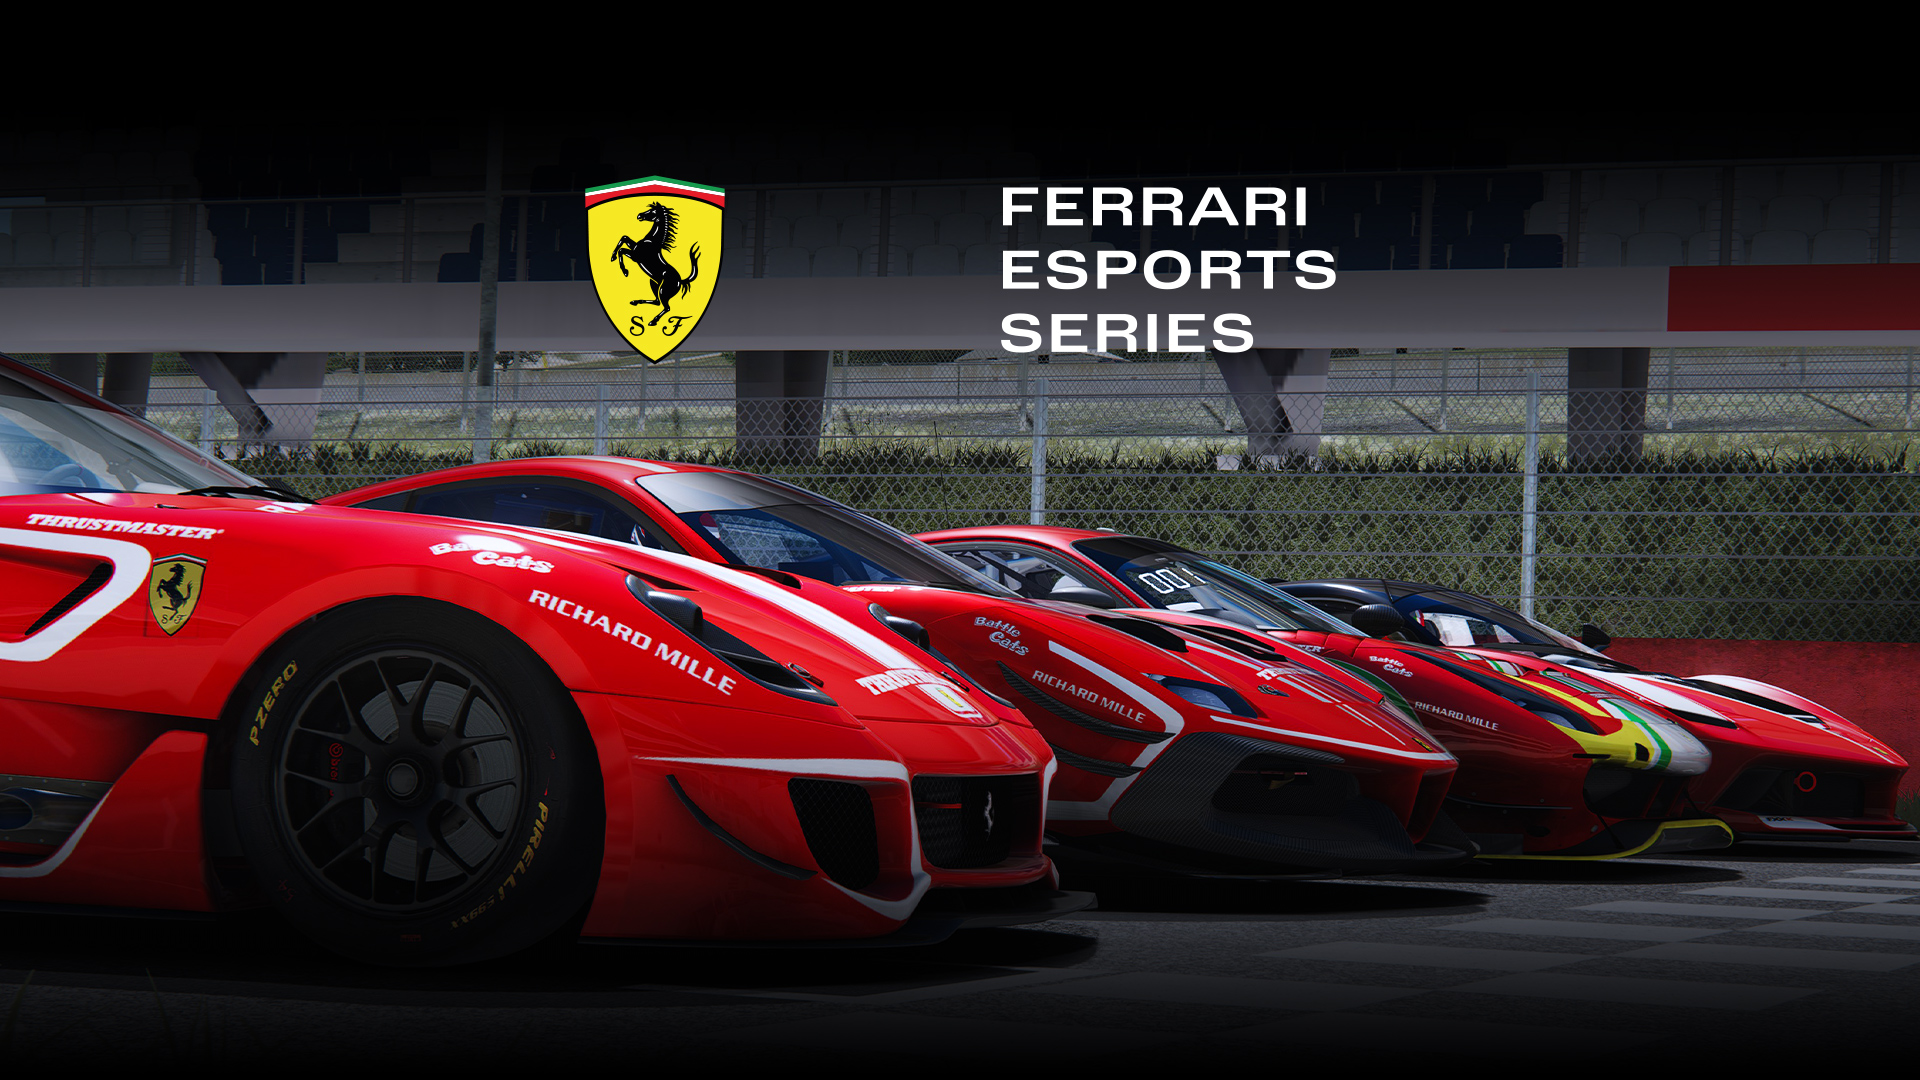 More information about "Ferrari Esports Series: stasera ore 21 la prima qualifica a Brands Hatch"